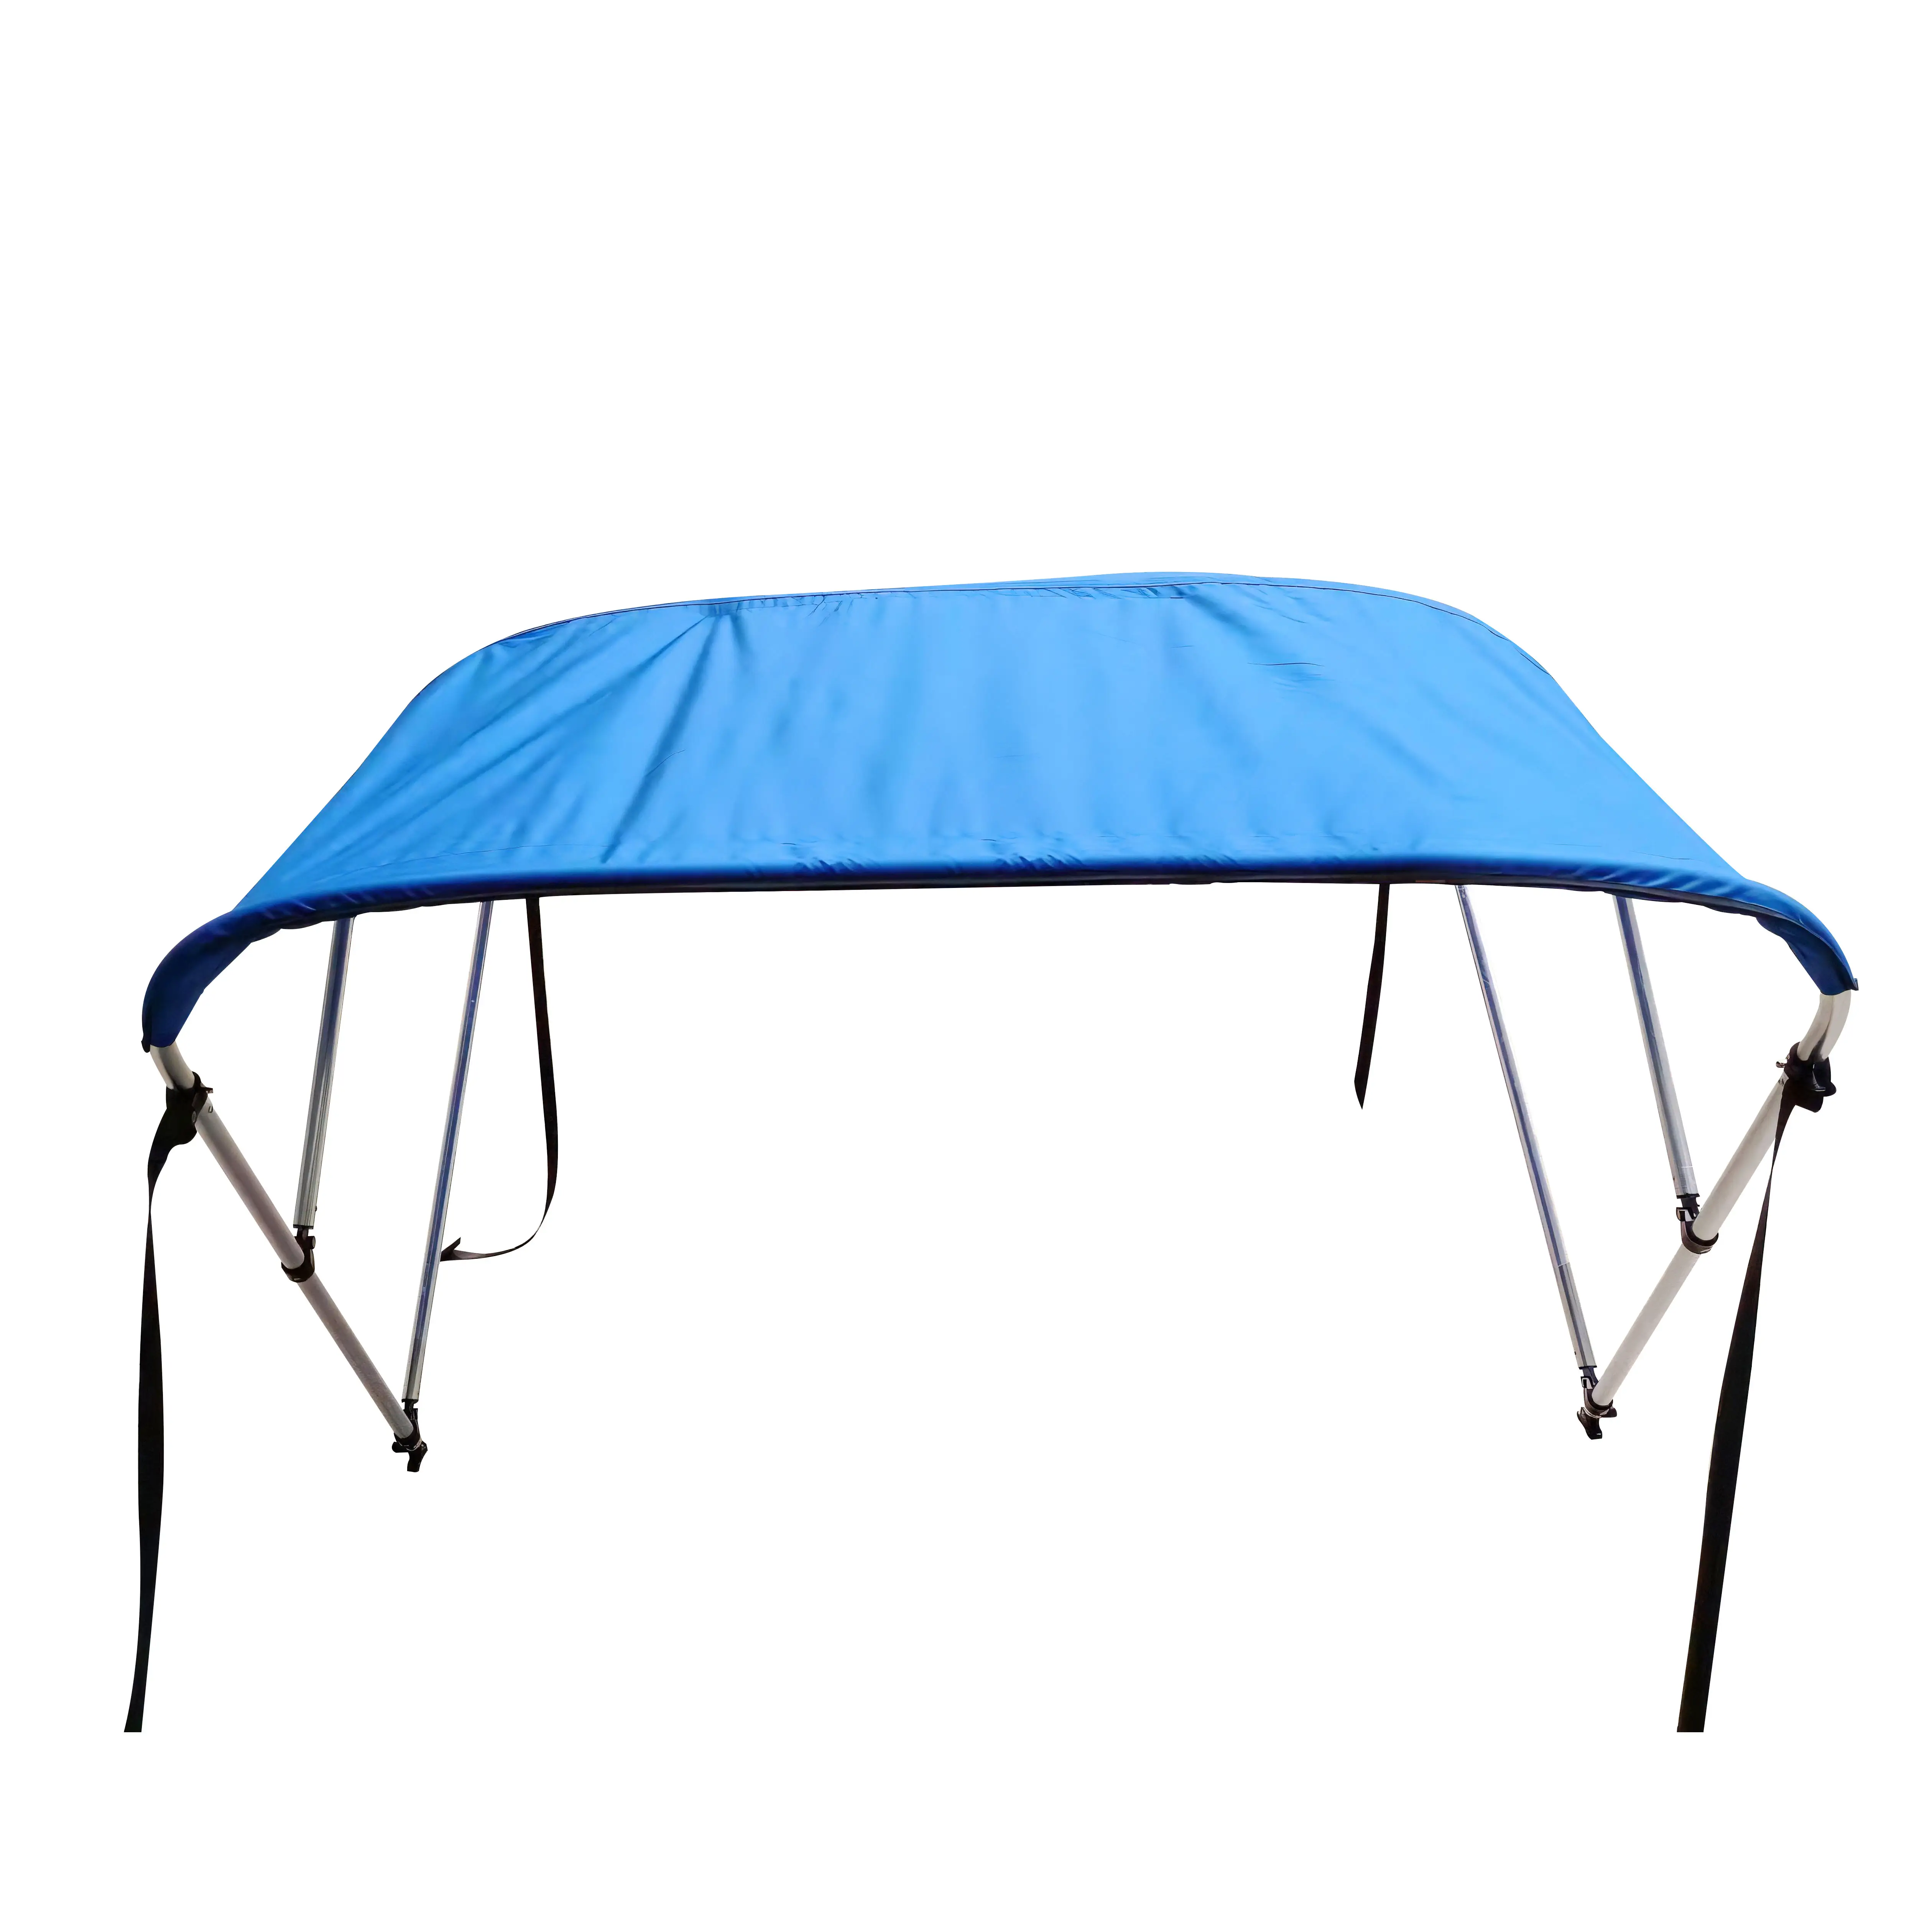 HANSE MARINE Boat Tent 3 bracci Bimini Top/parasole di alta qualità con viti collegate